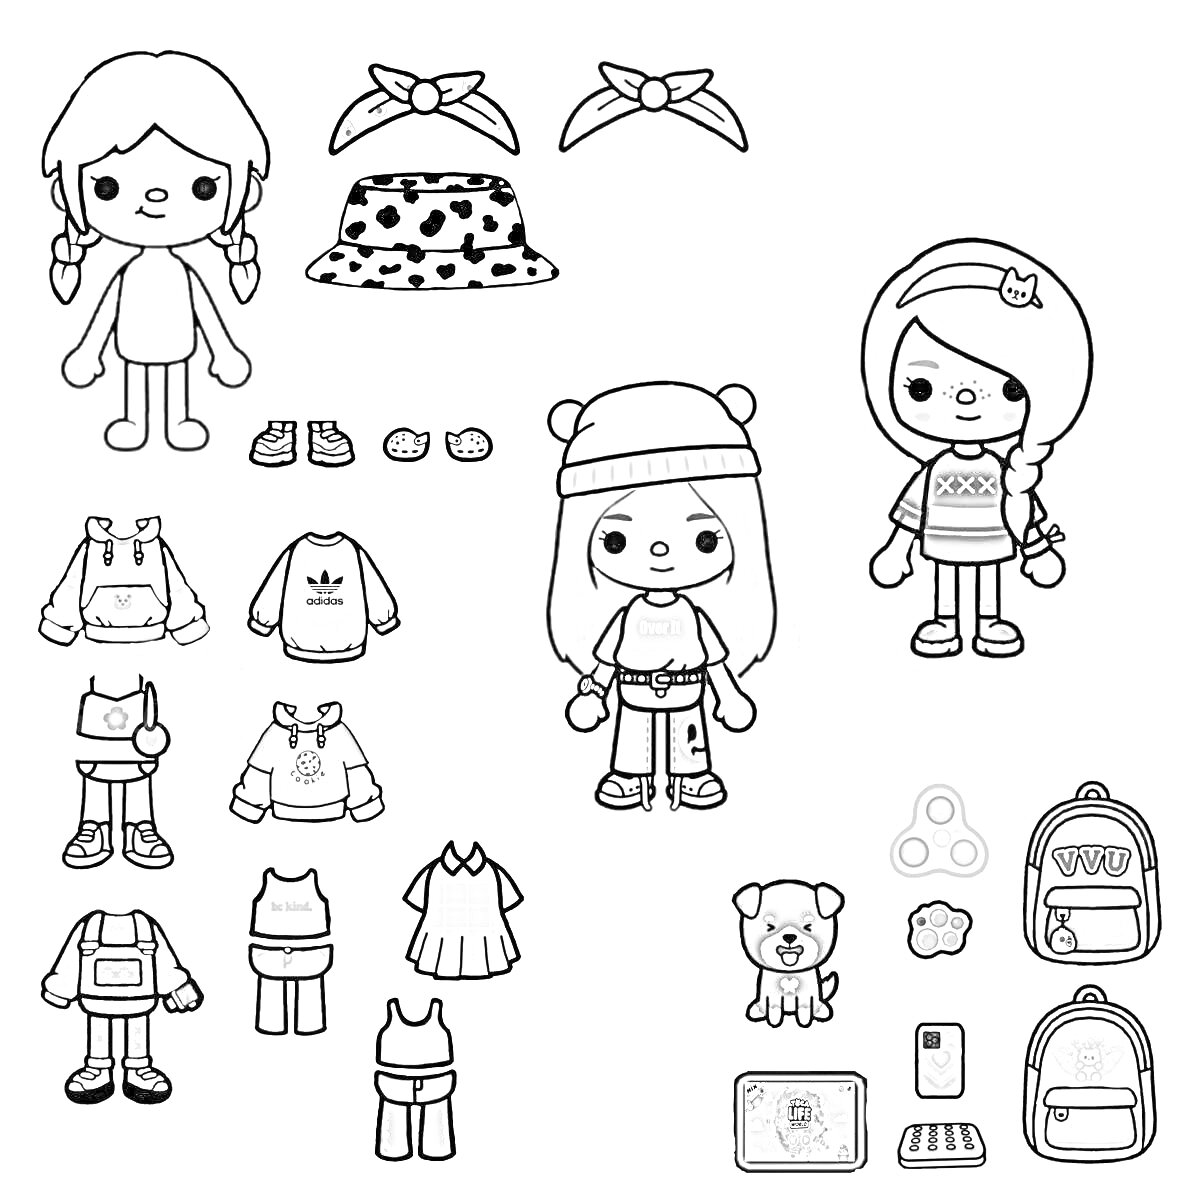 Куклы Тока Бока с набором одежды и аксессуаров, включая свитера, брюки, юбки, шорты, шапки, повязки на голову, обувь, рюкзаки, мобильное устройство, игрушку-медвежонка и поп-ит.